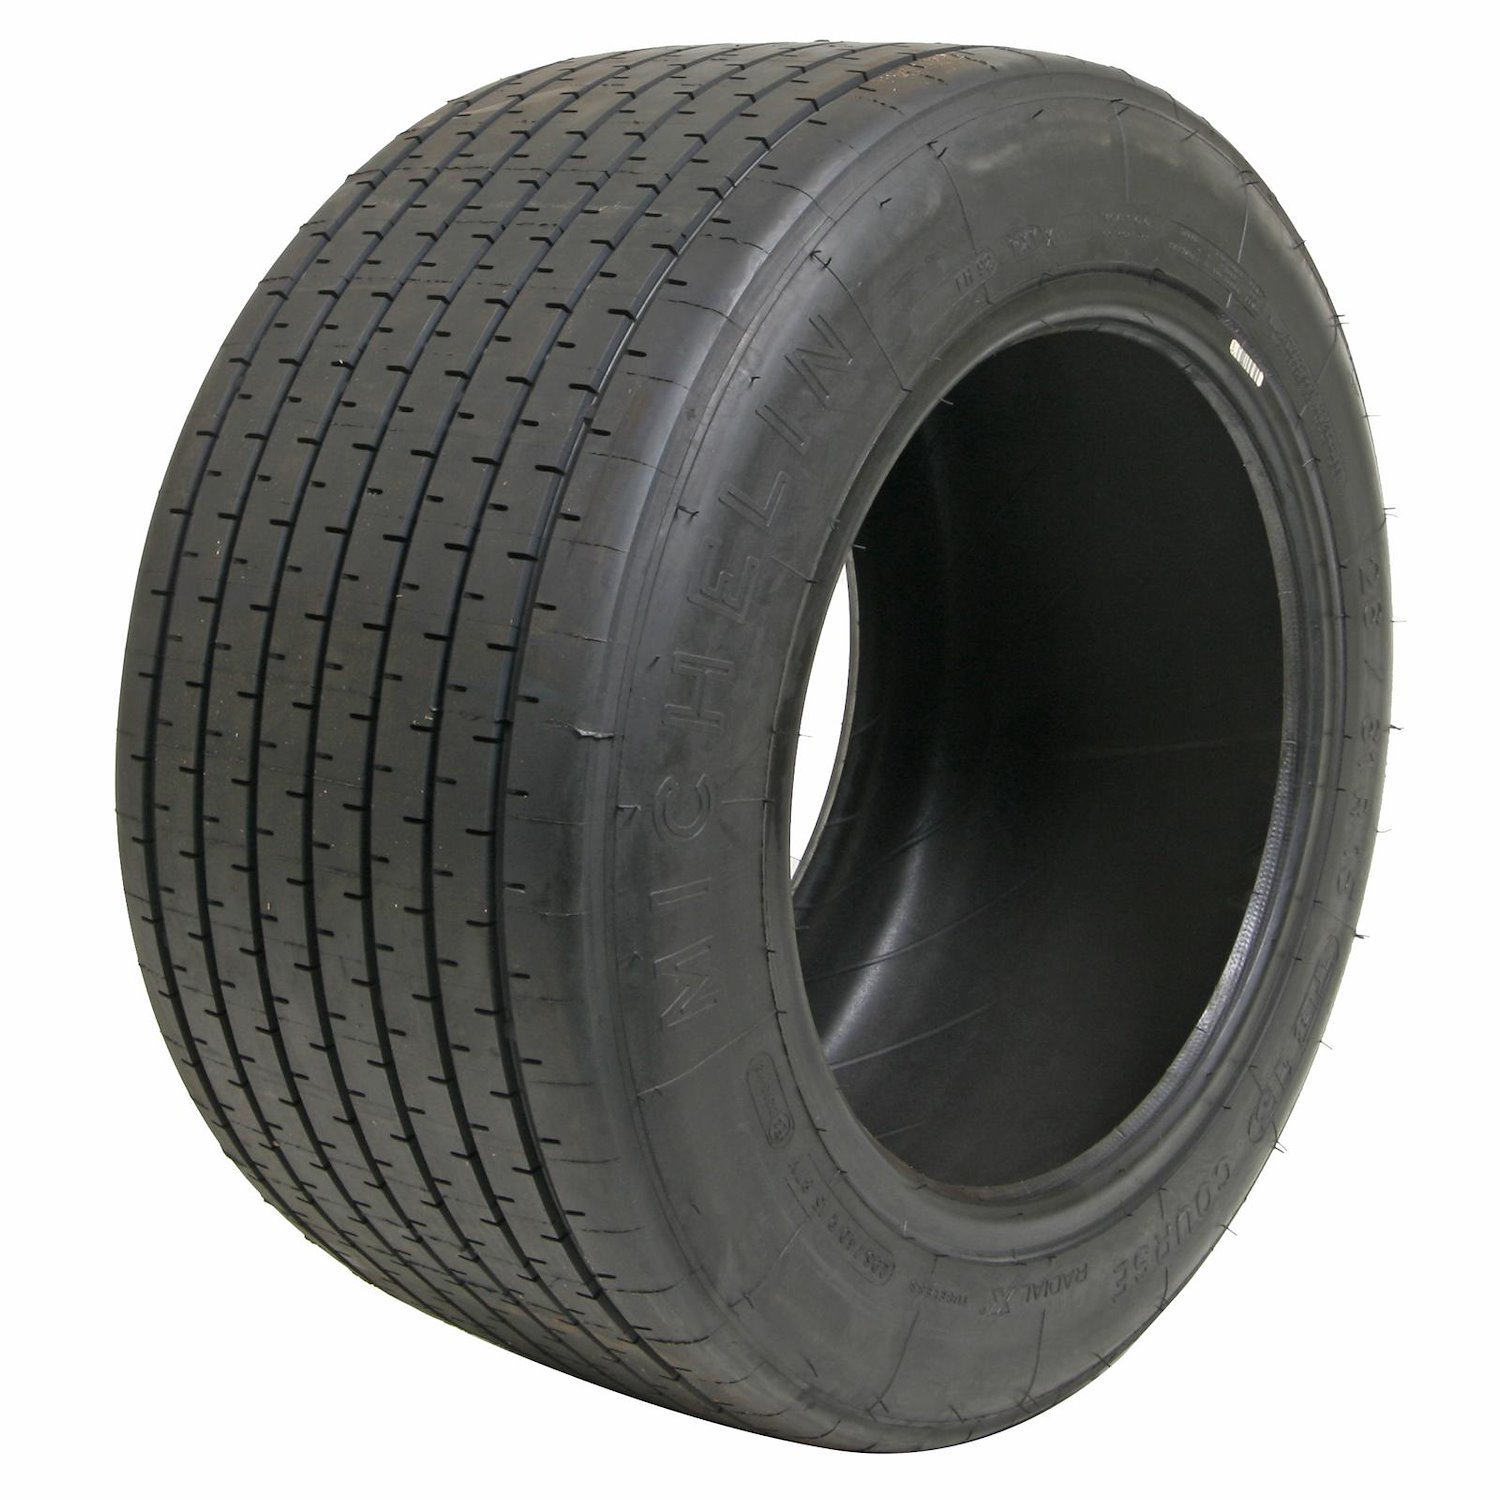 71231 Tire, Michelin TB15+, 26/61-15